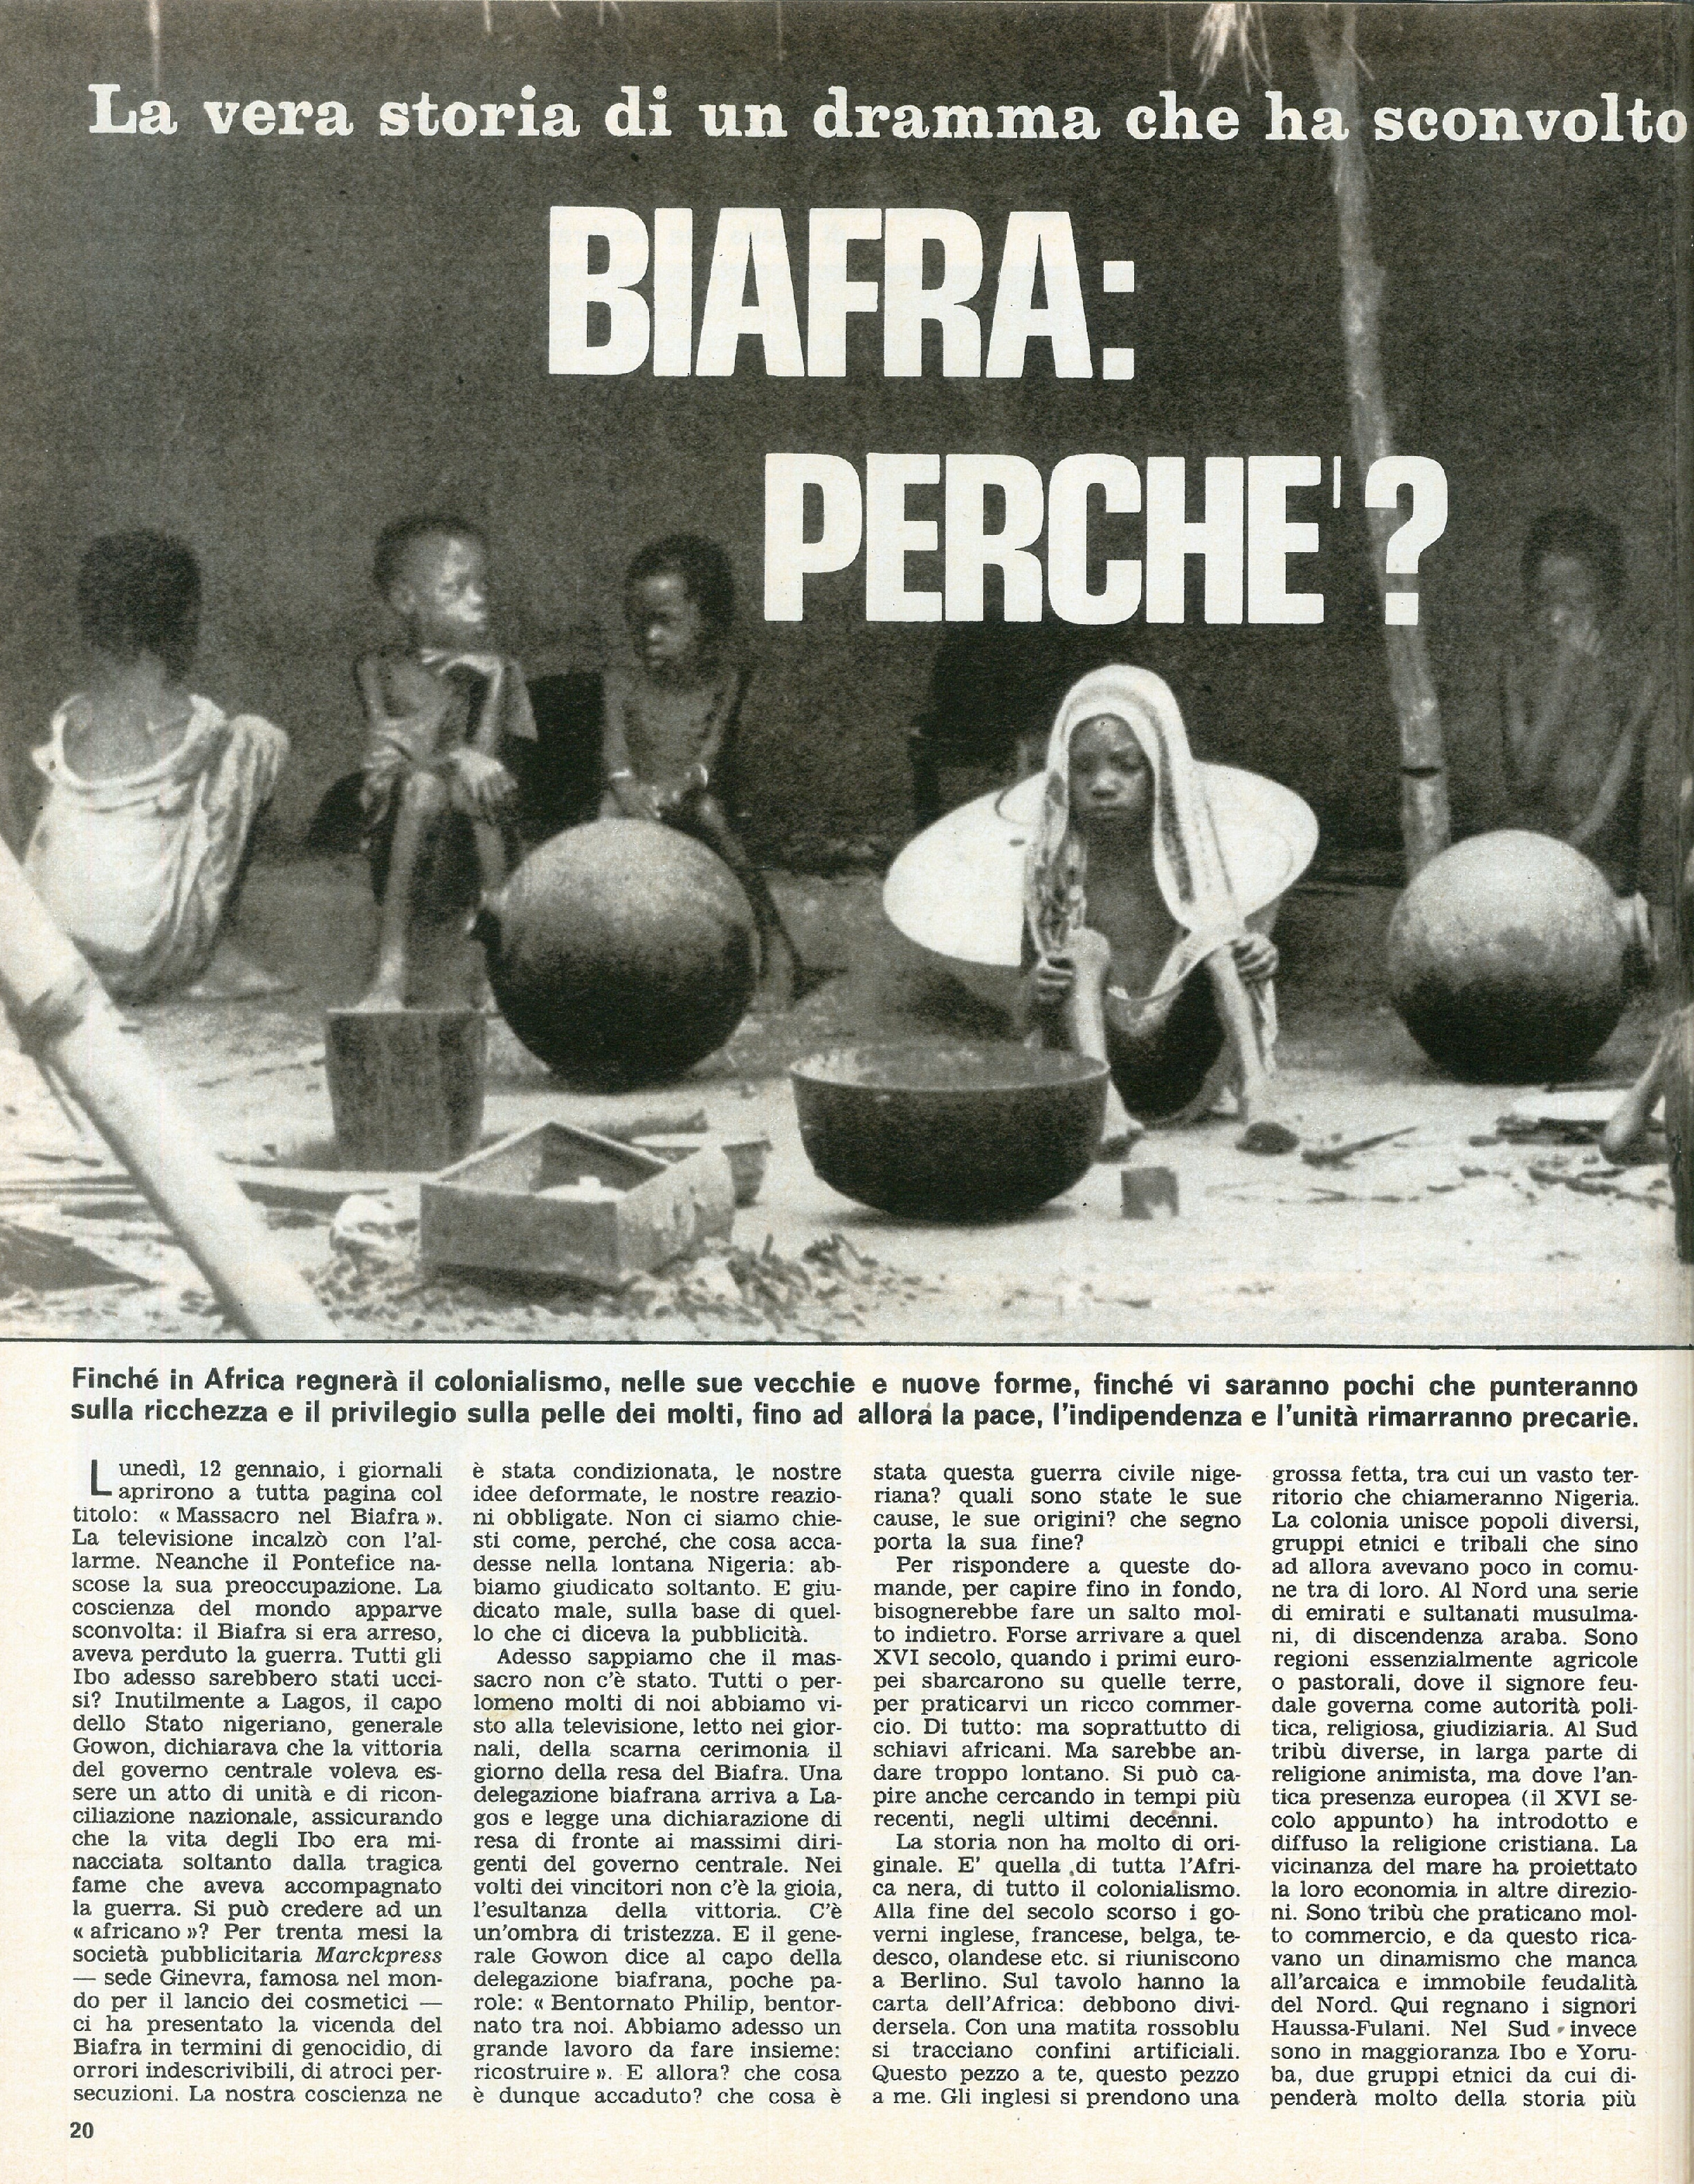 Foto: Unione Sovietica: controllo delle nascite. Le lotte dei tessili. La famiglia Cervi. Il vero dramma del Biafra